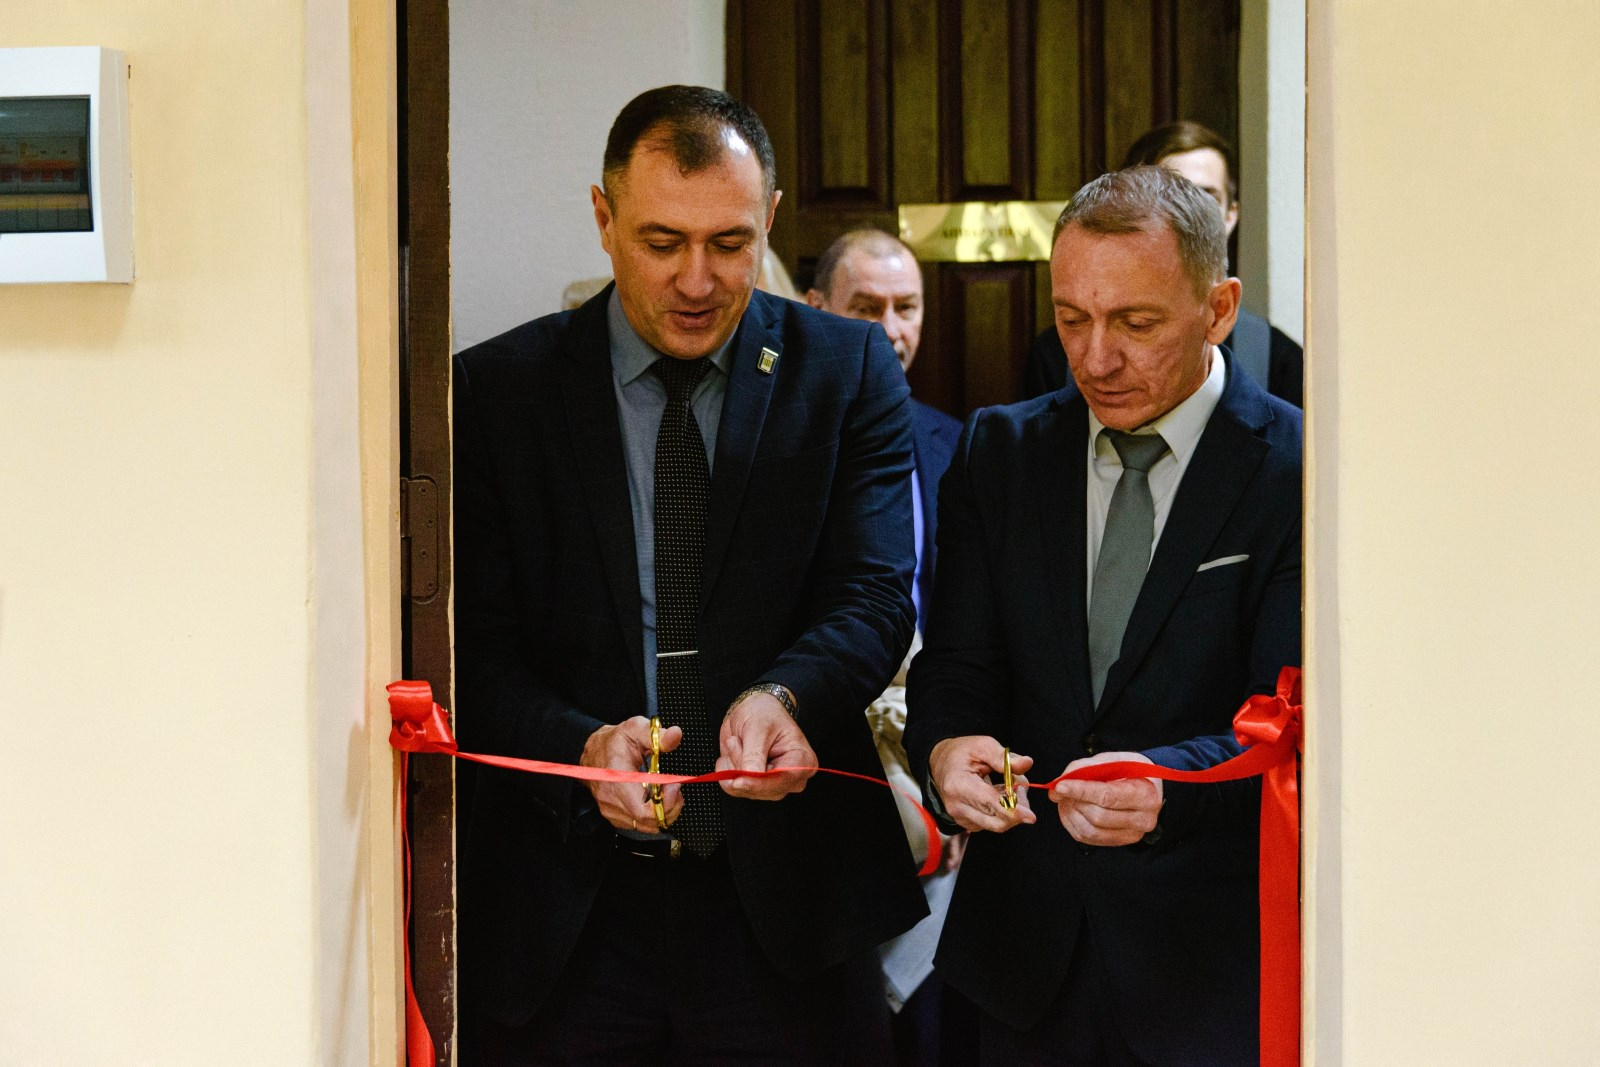 В Белорусско-Российском университете открыли лабораторию нефтегазовых технологий